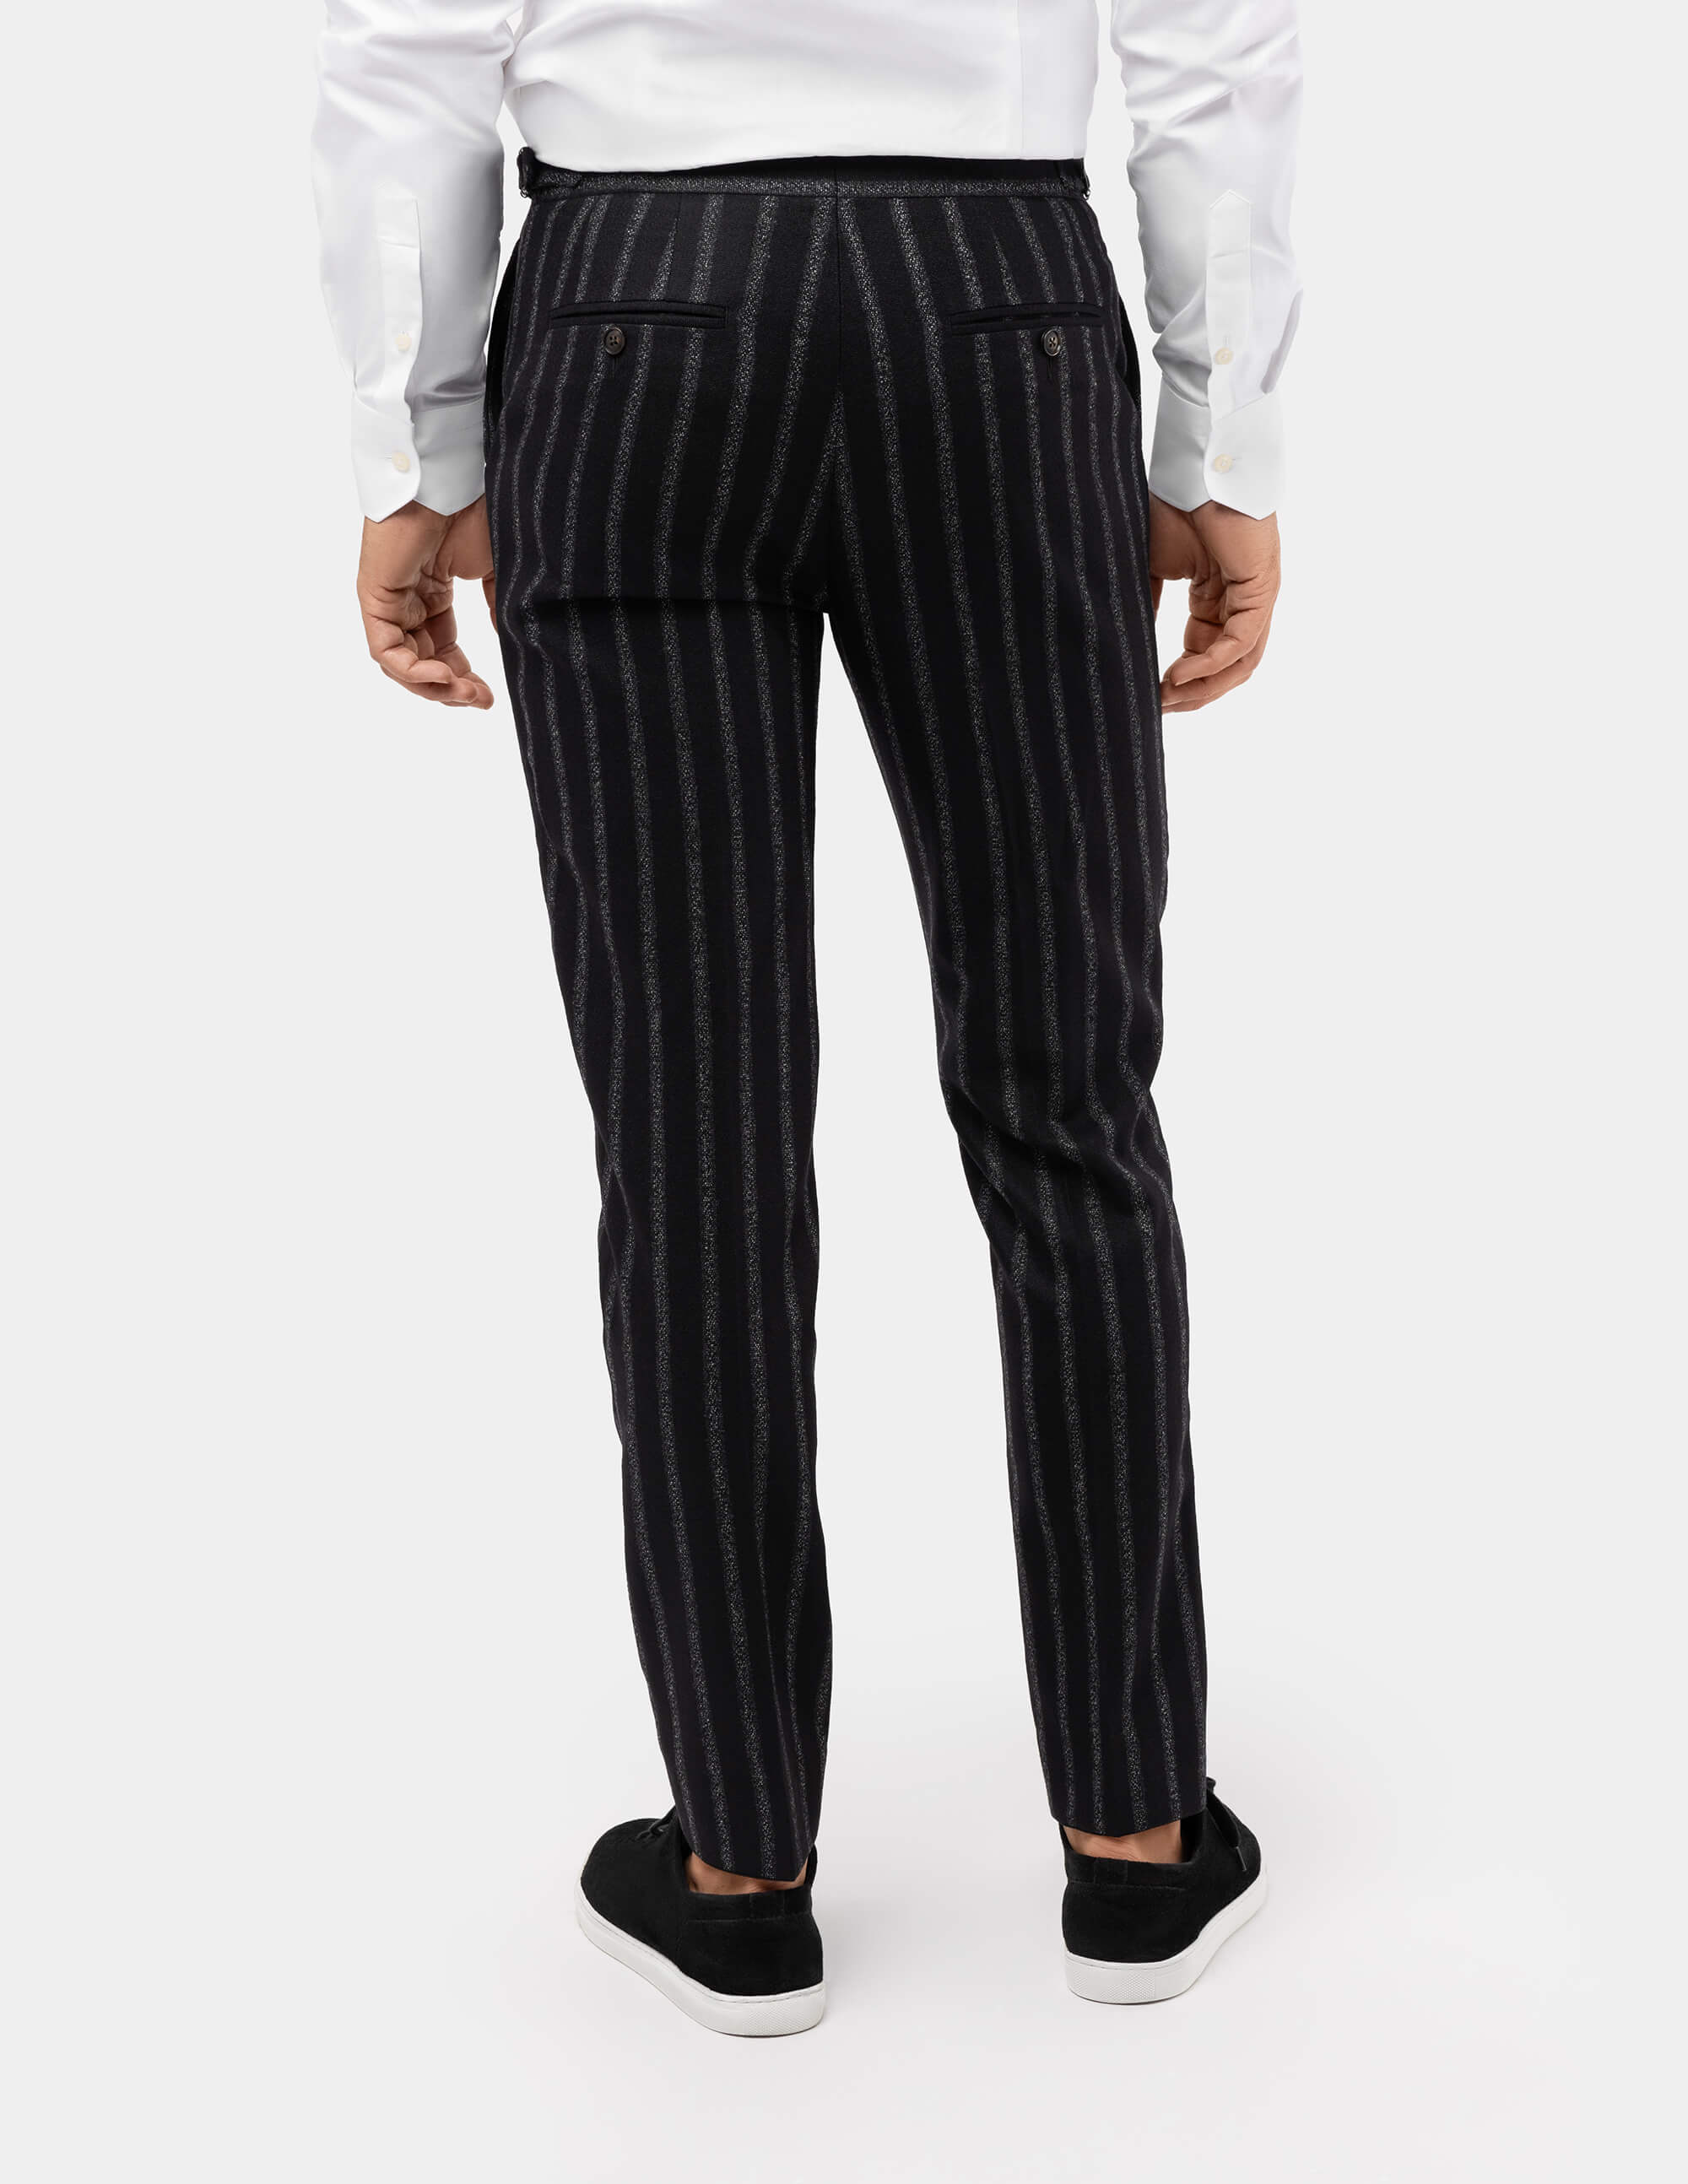 WEBER+WEBER men's trousers | WEBER+WEBER